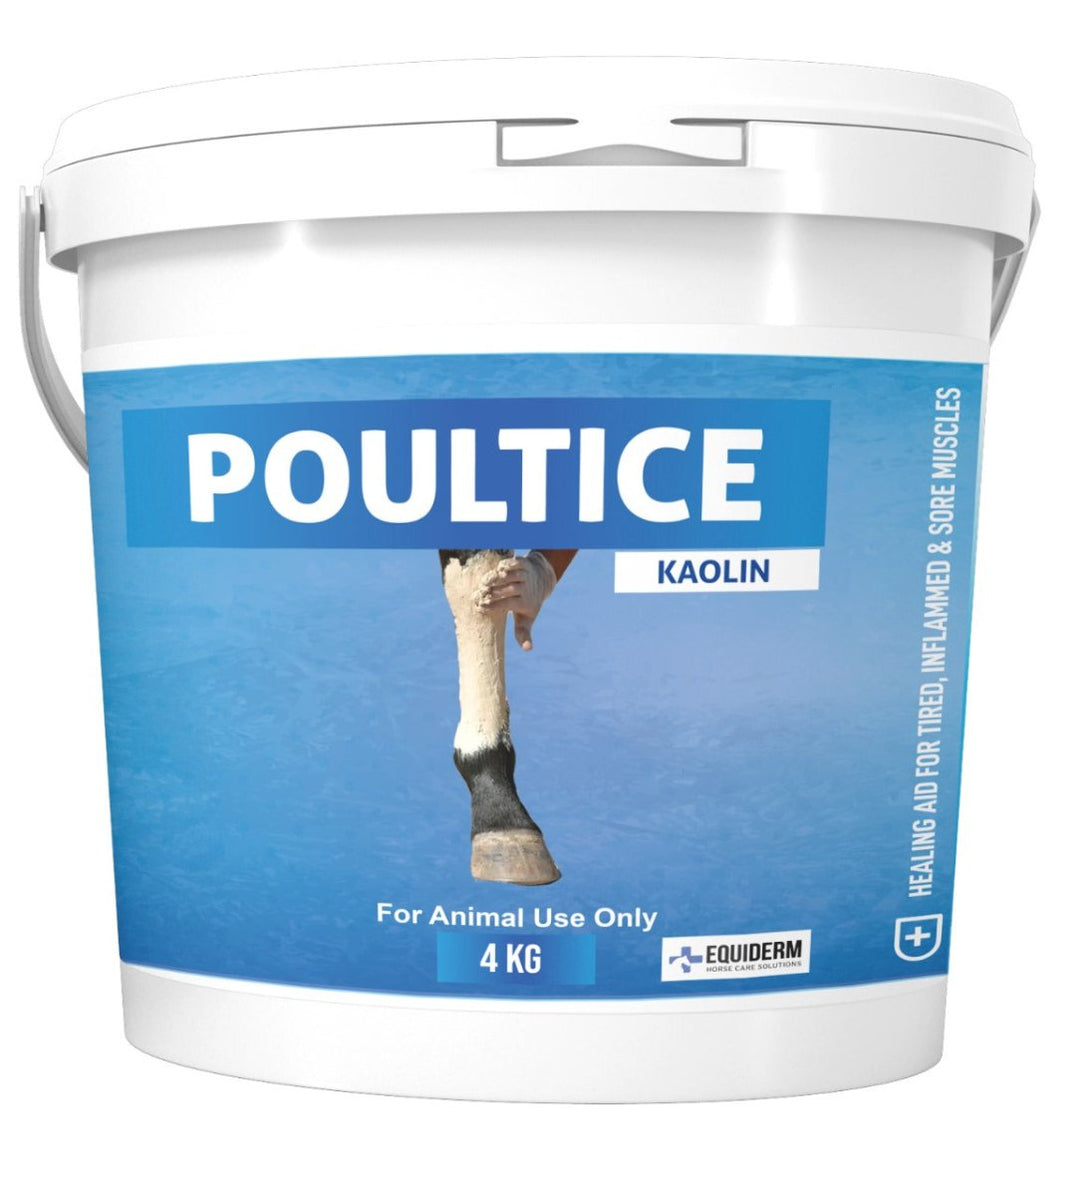 POULTICE Kaolin 4KG - Shopivet.com